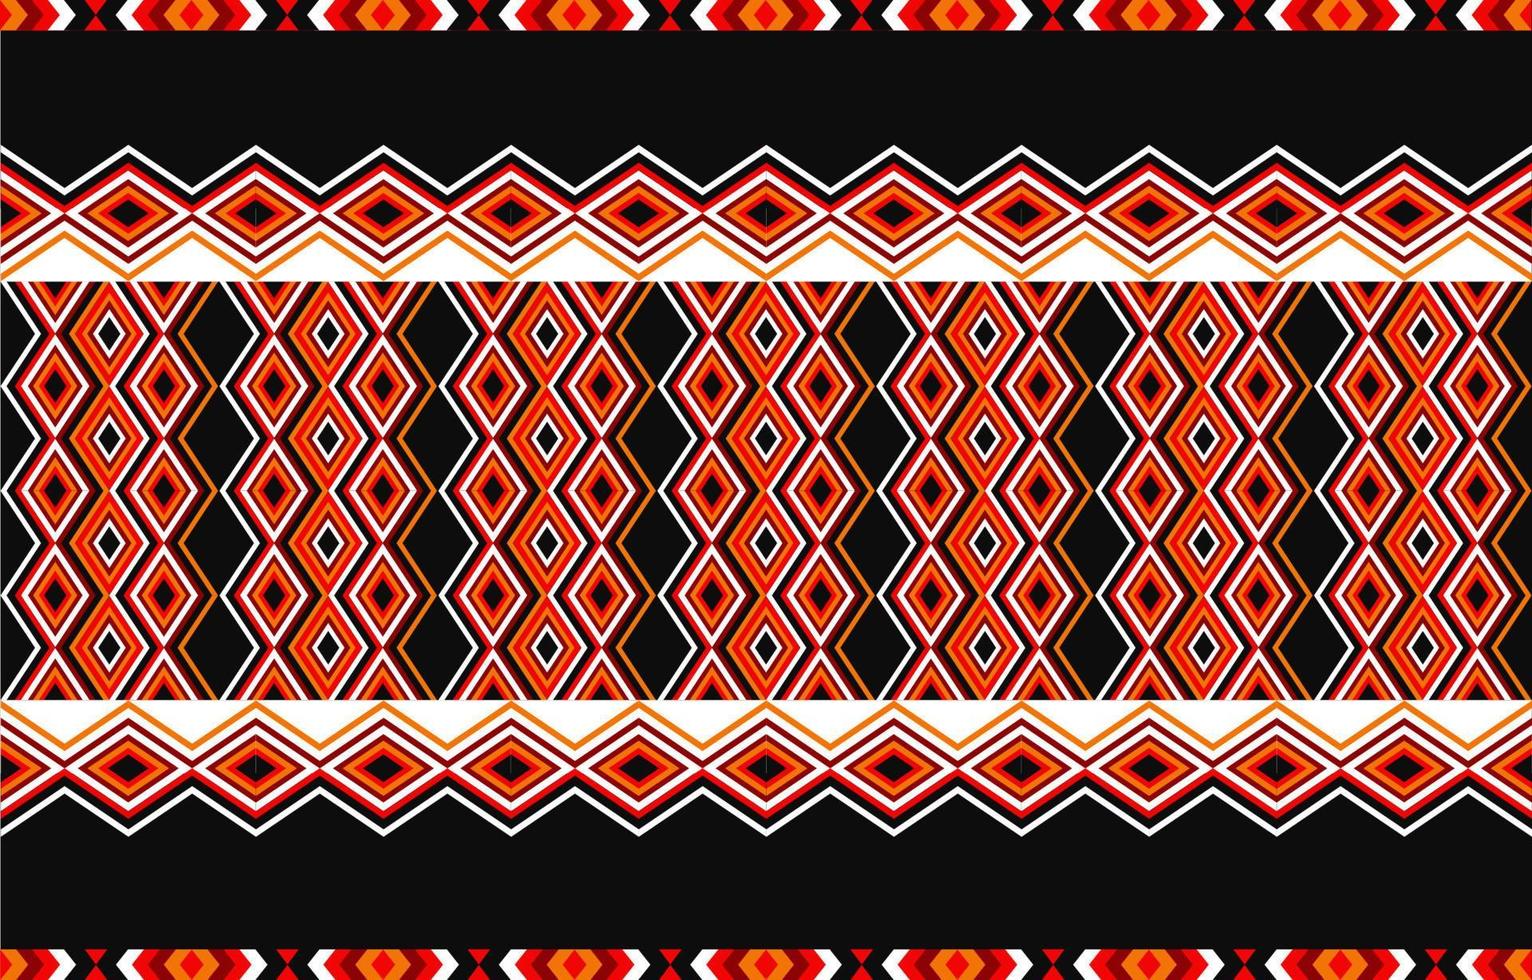 design tradicional de padrão étnico tribal americano para tapete, papel de parede, embrulho, batik, tecido, cortina, fundo, roupas, estilo de bordado de ilustração vetorial. vetor